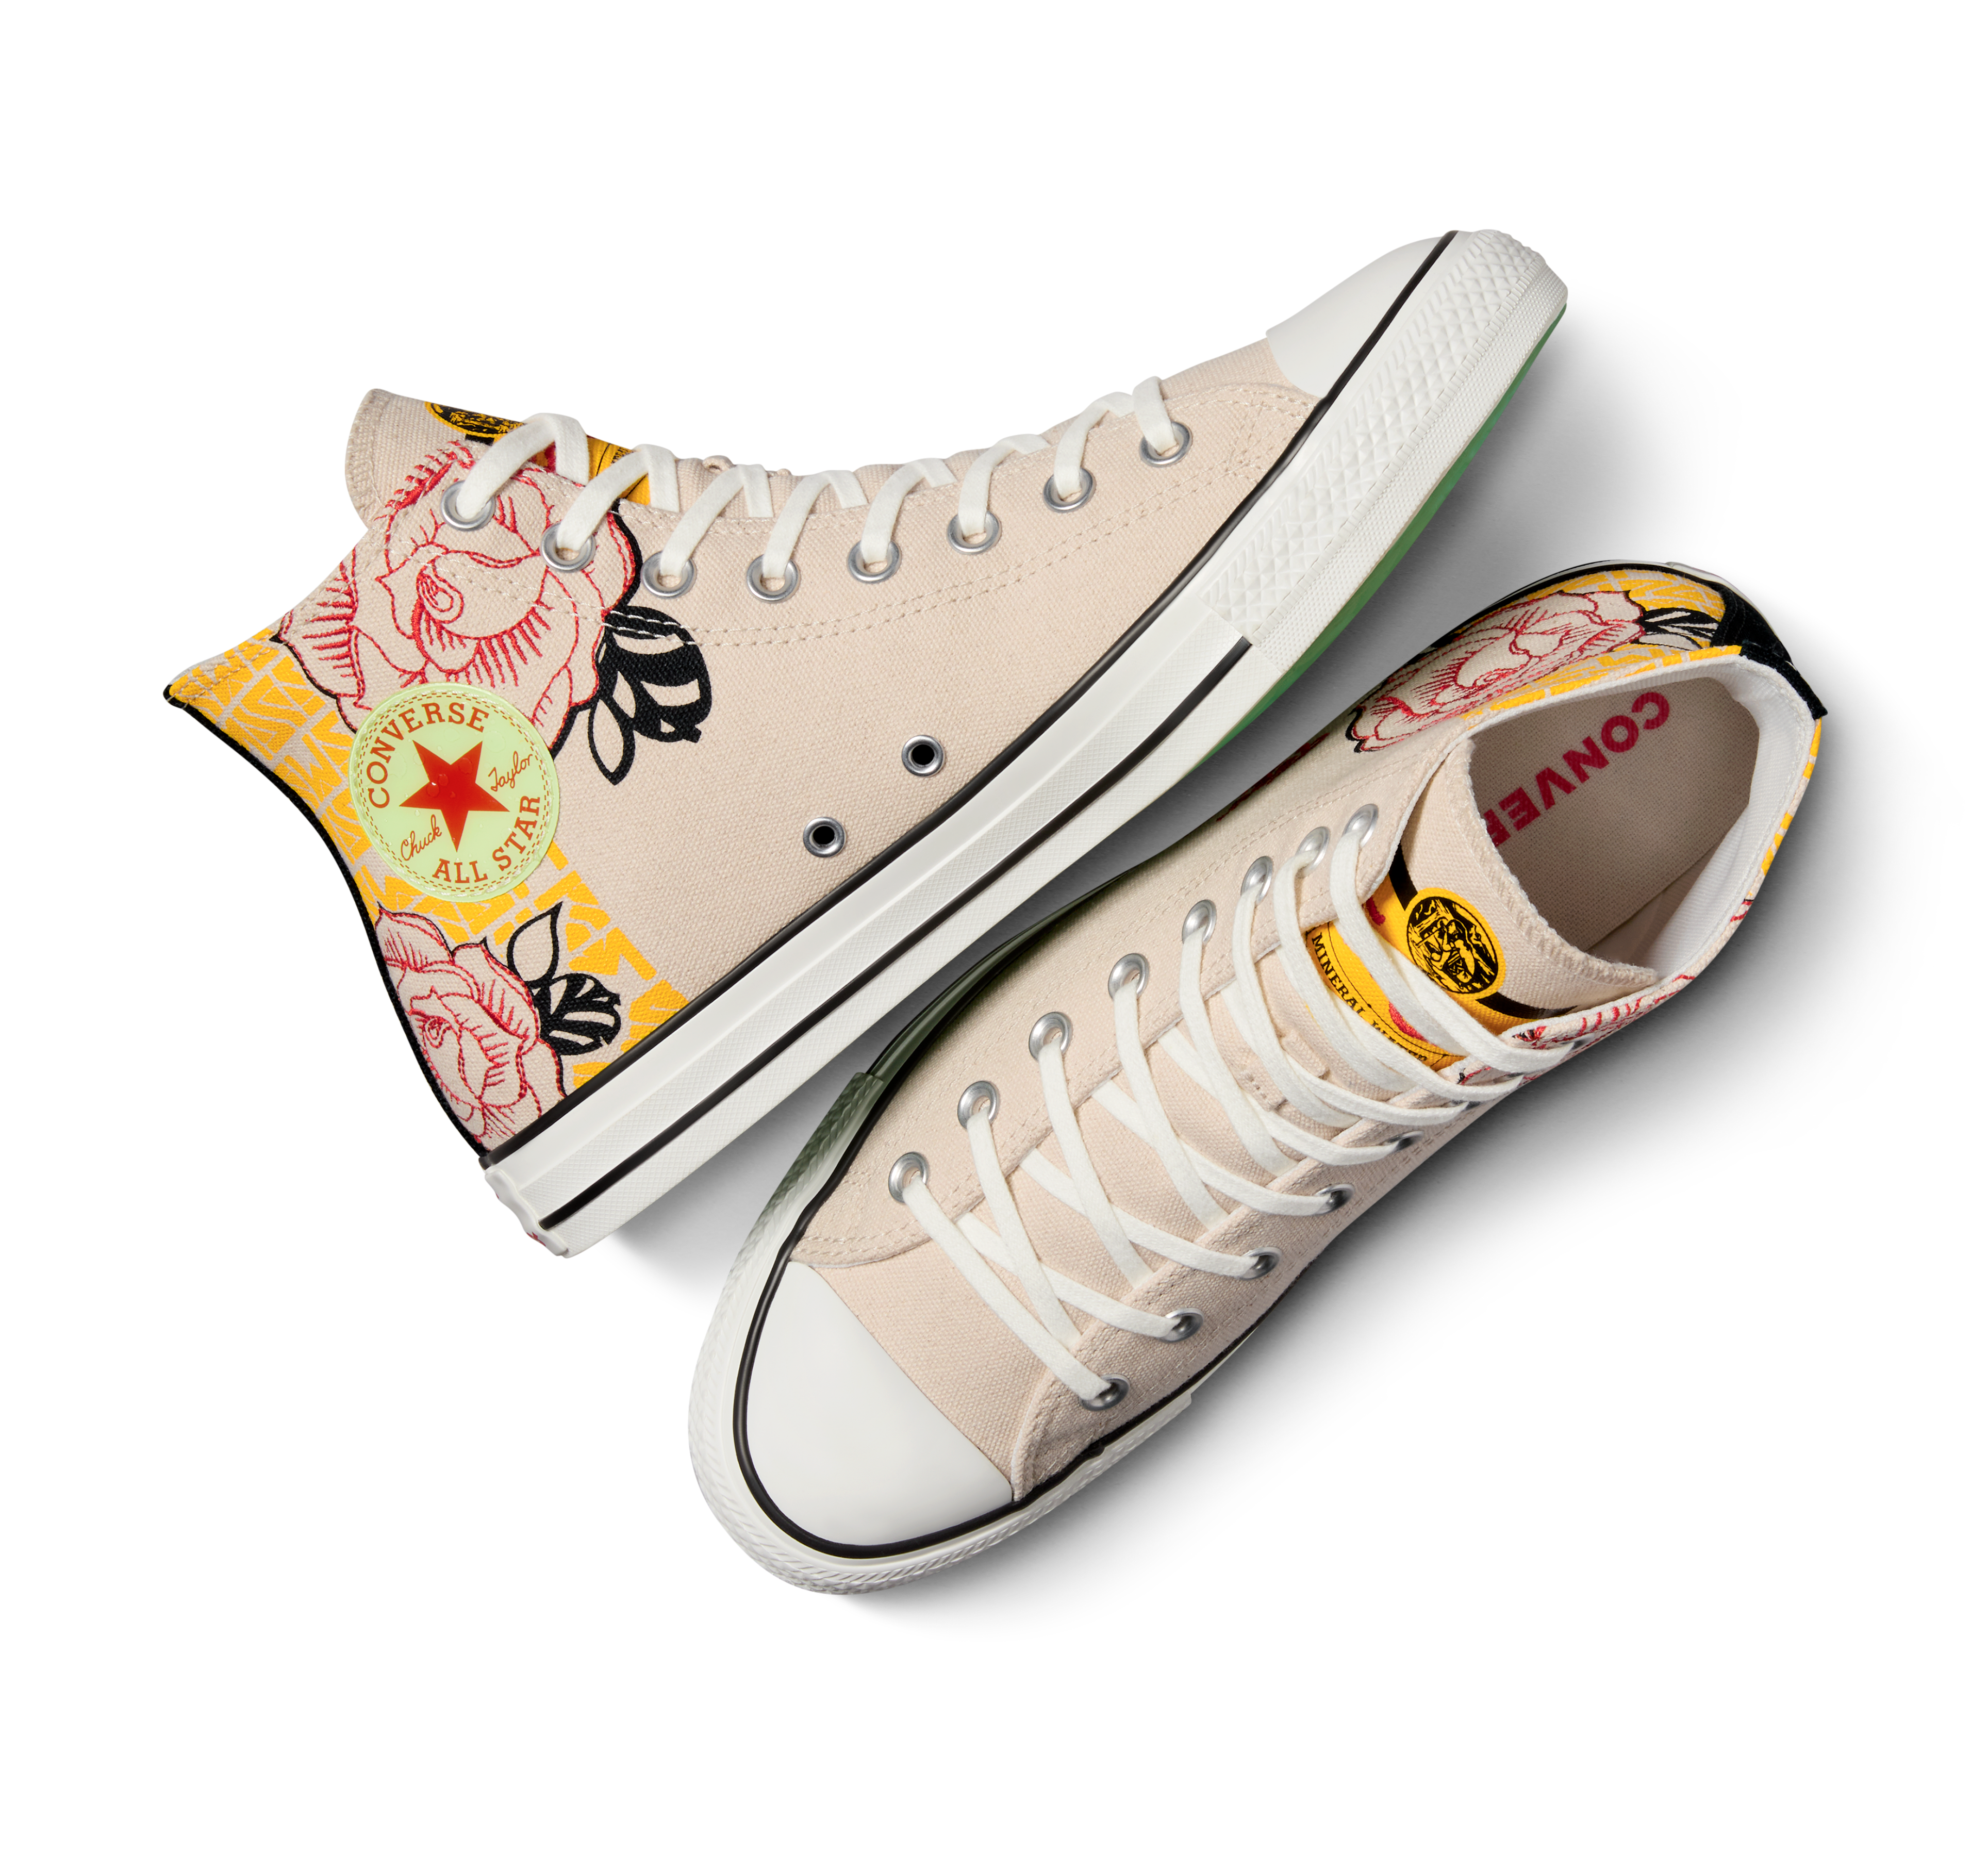 Converse x Topo Chico Drop New Apparel & Sneaker Collaboration